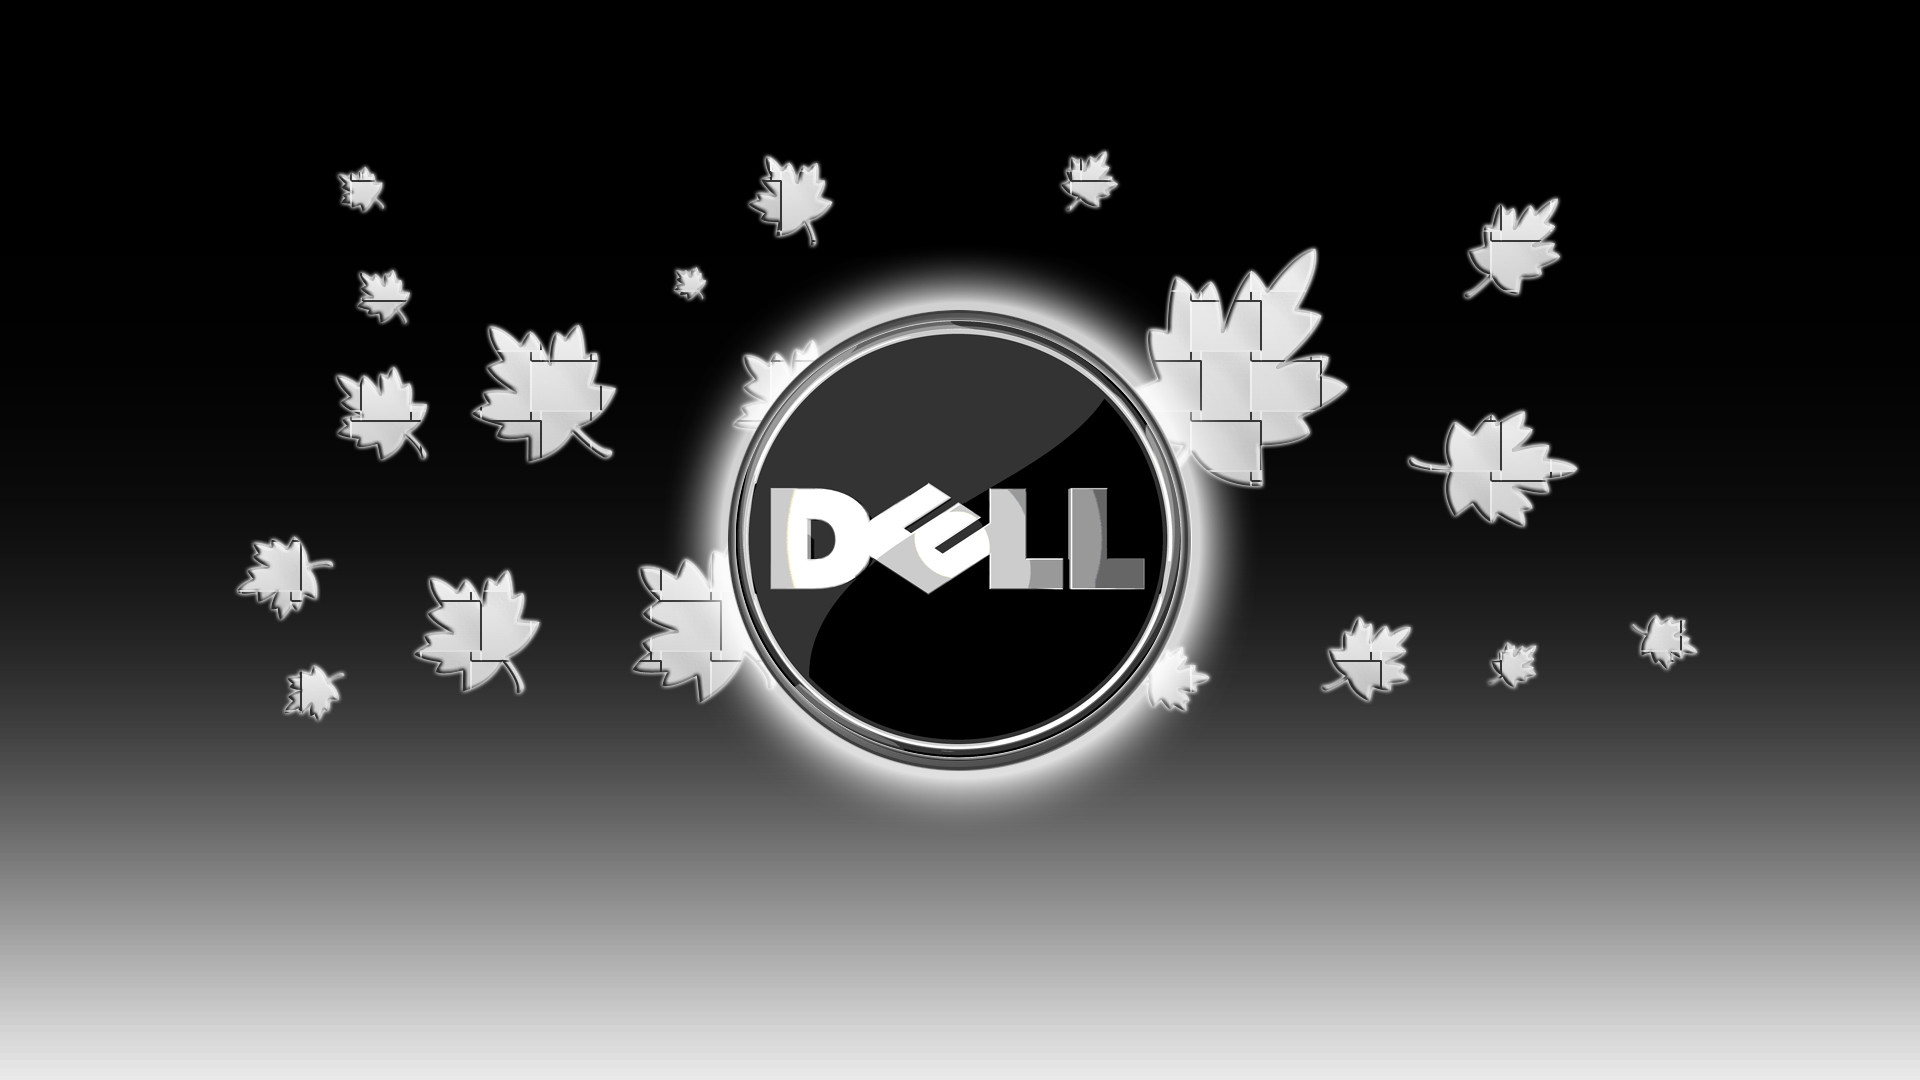 Hd Dell Wallpapers - Dell Wallpaper Hd - HD Wallpaper 